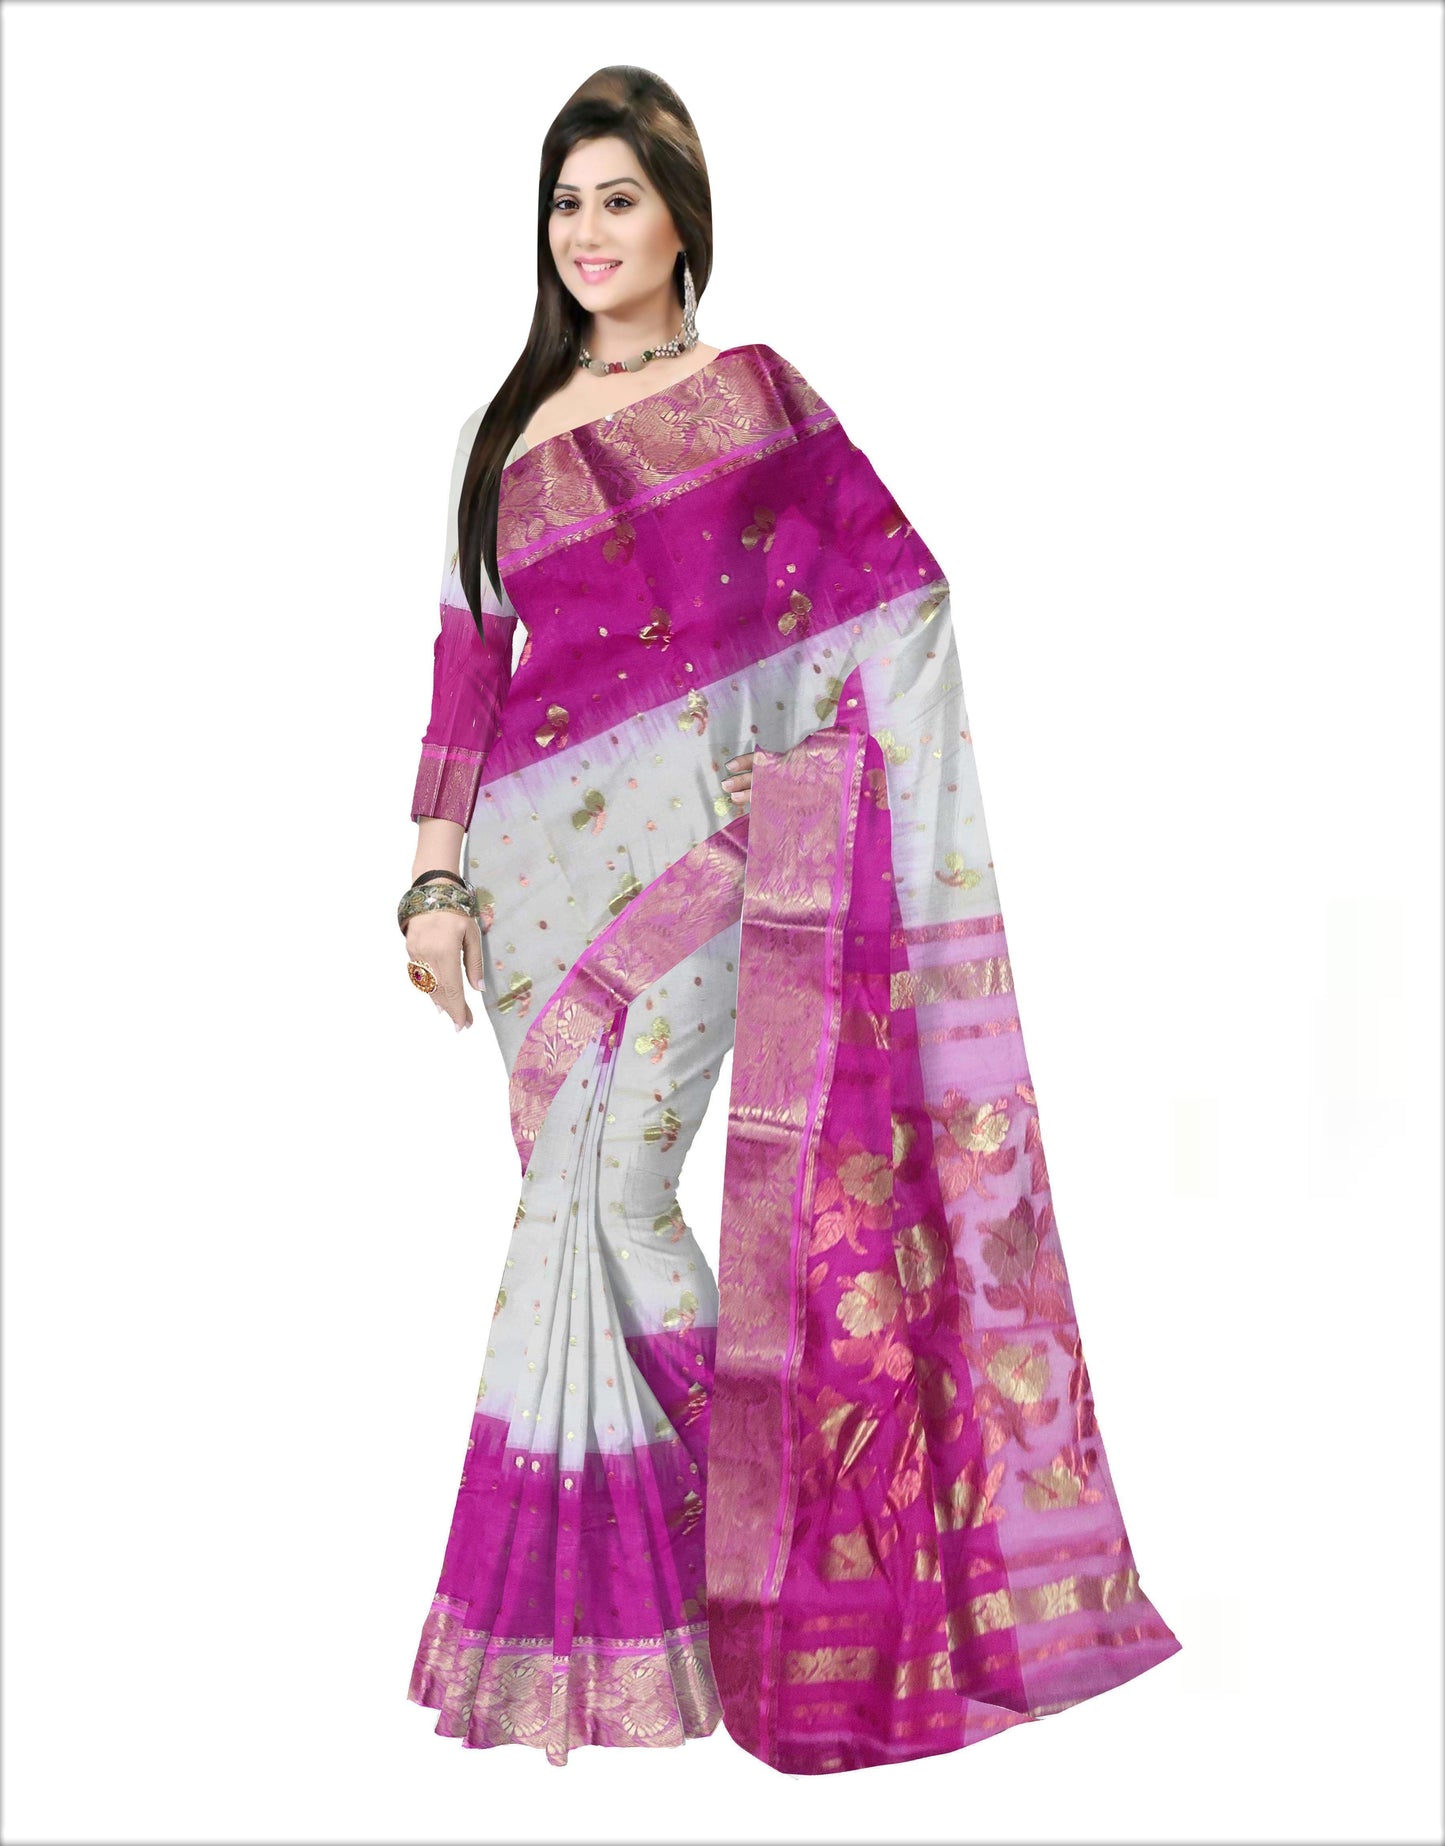 Pradip Fabrics Woven Tant Banarasi Cream and Pink Color Saree